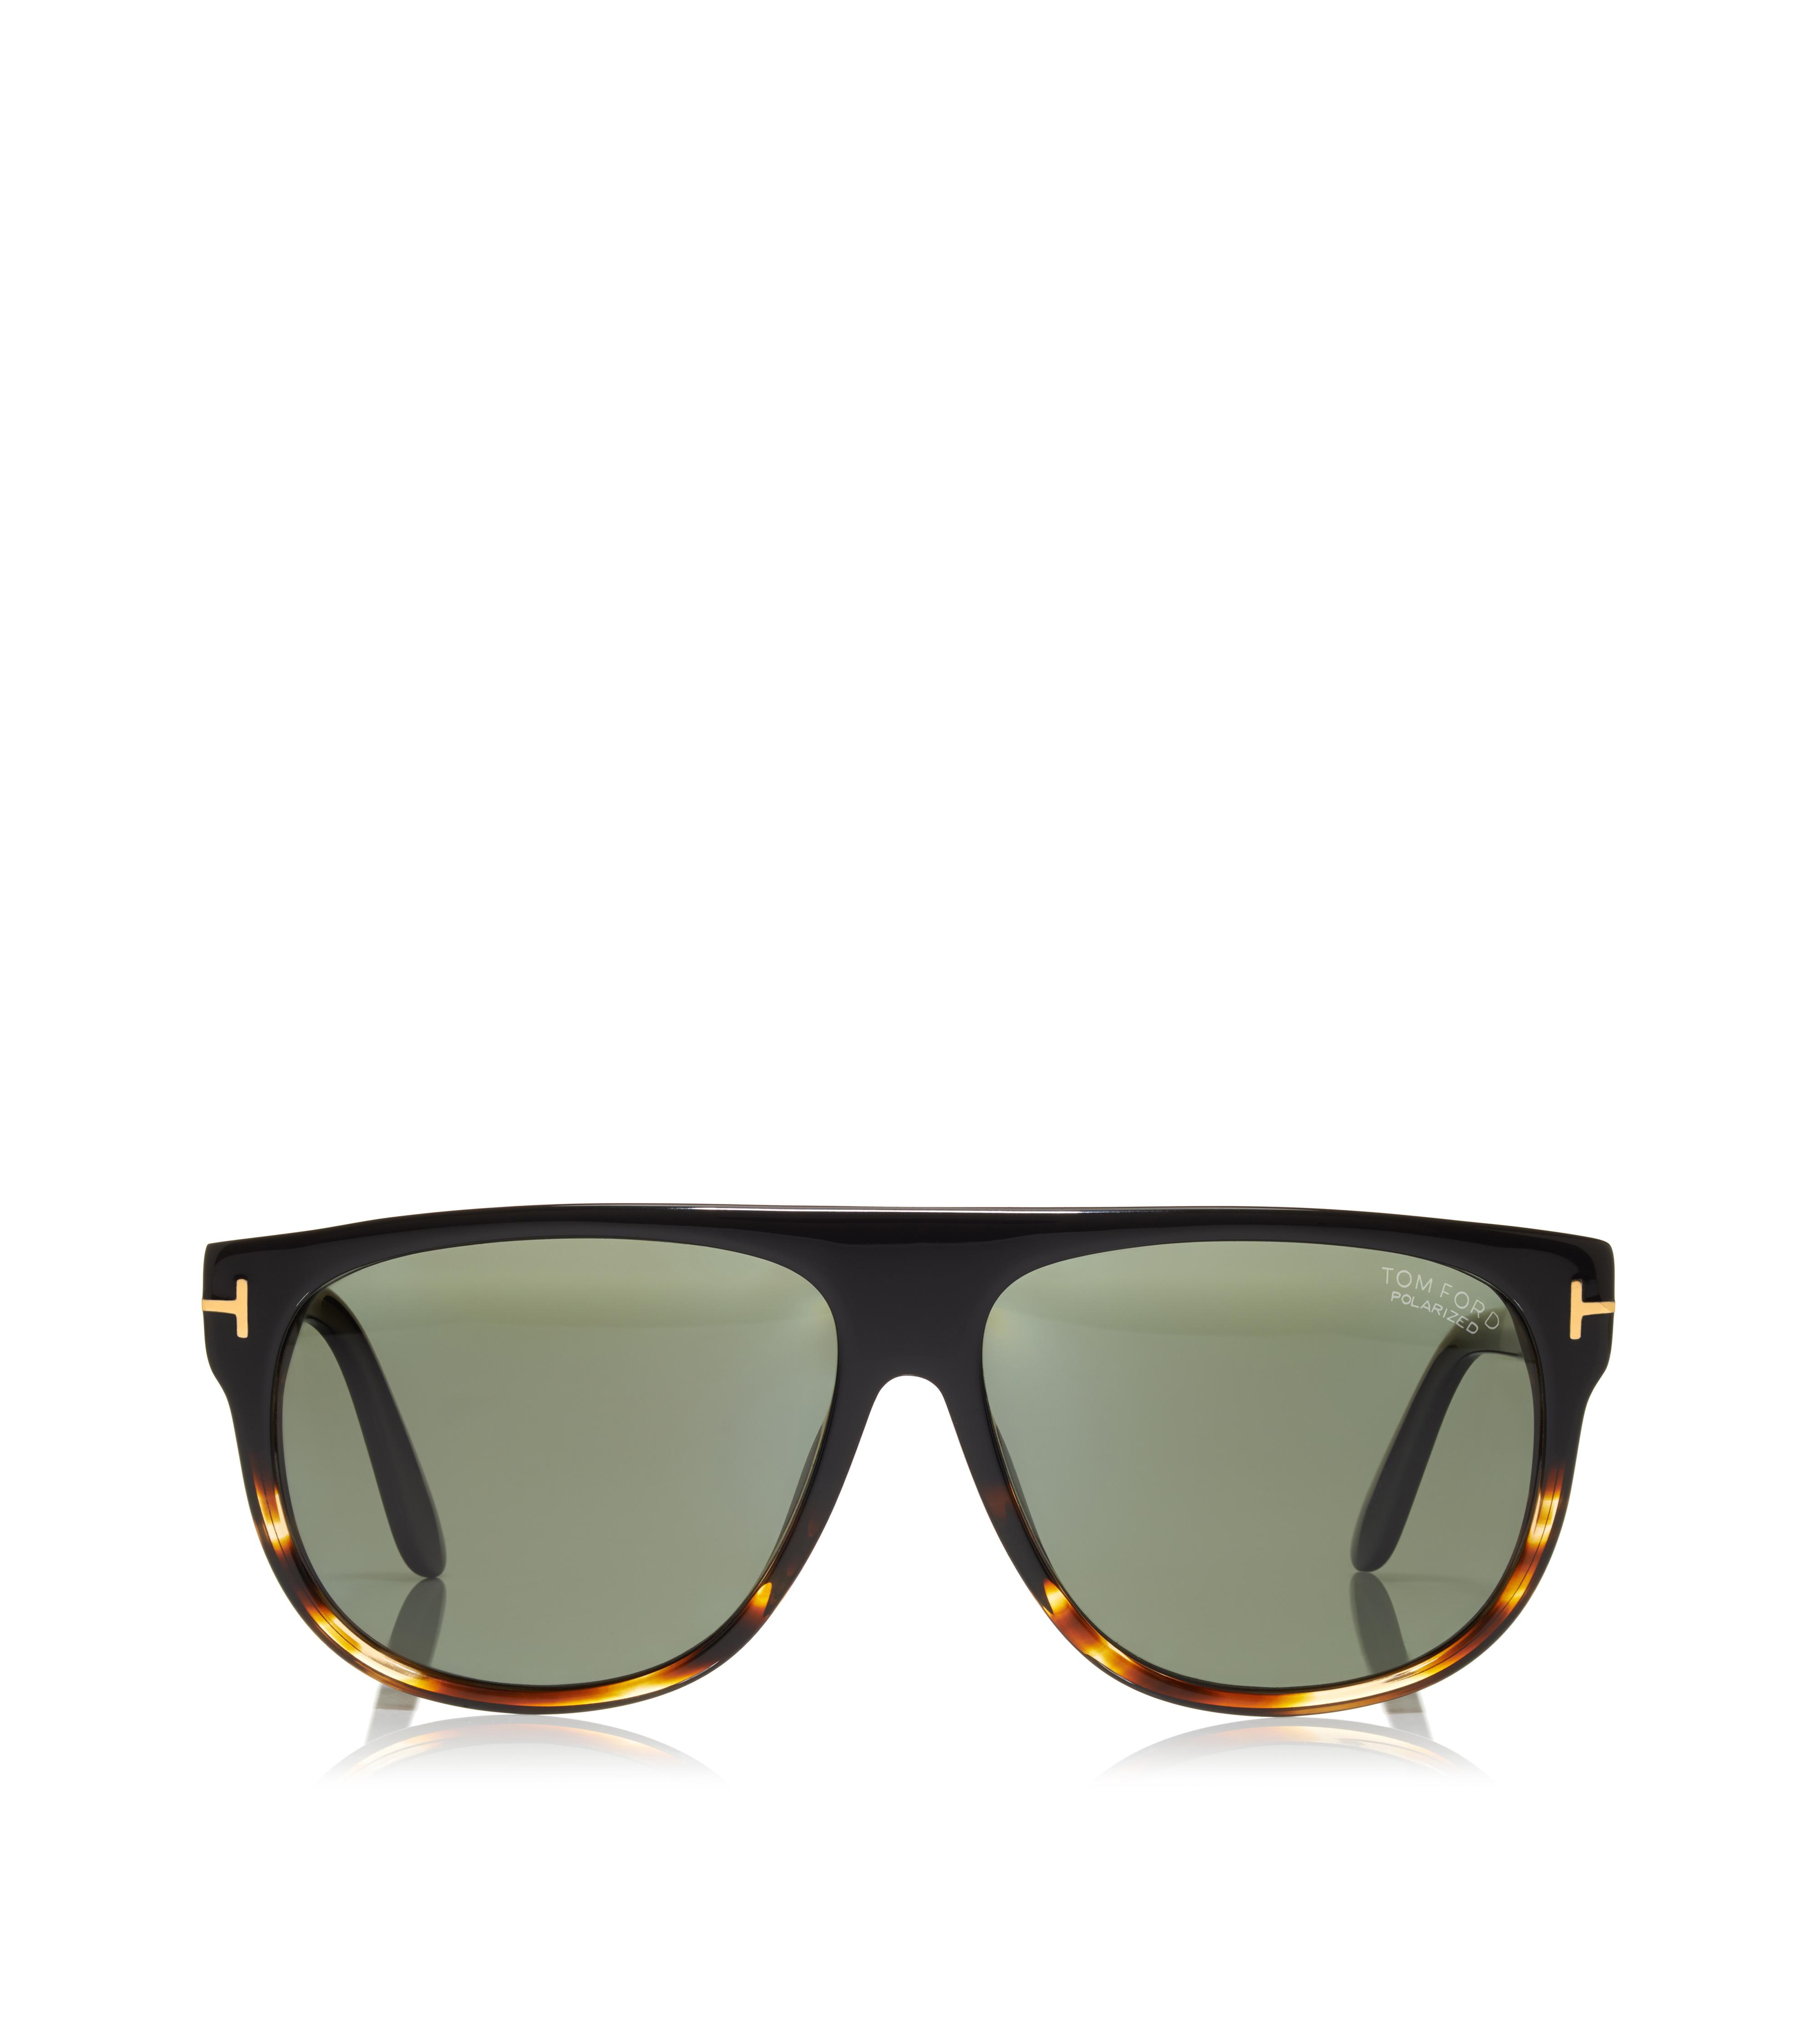 Designer Sunglasses for Men - Polarized & Aviator Sunglasses | TOM FORD